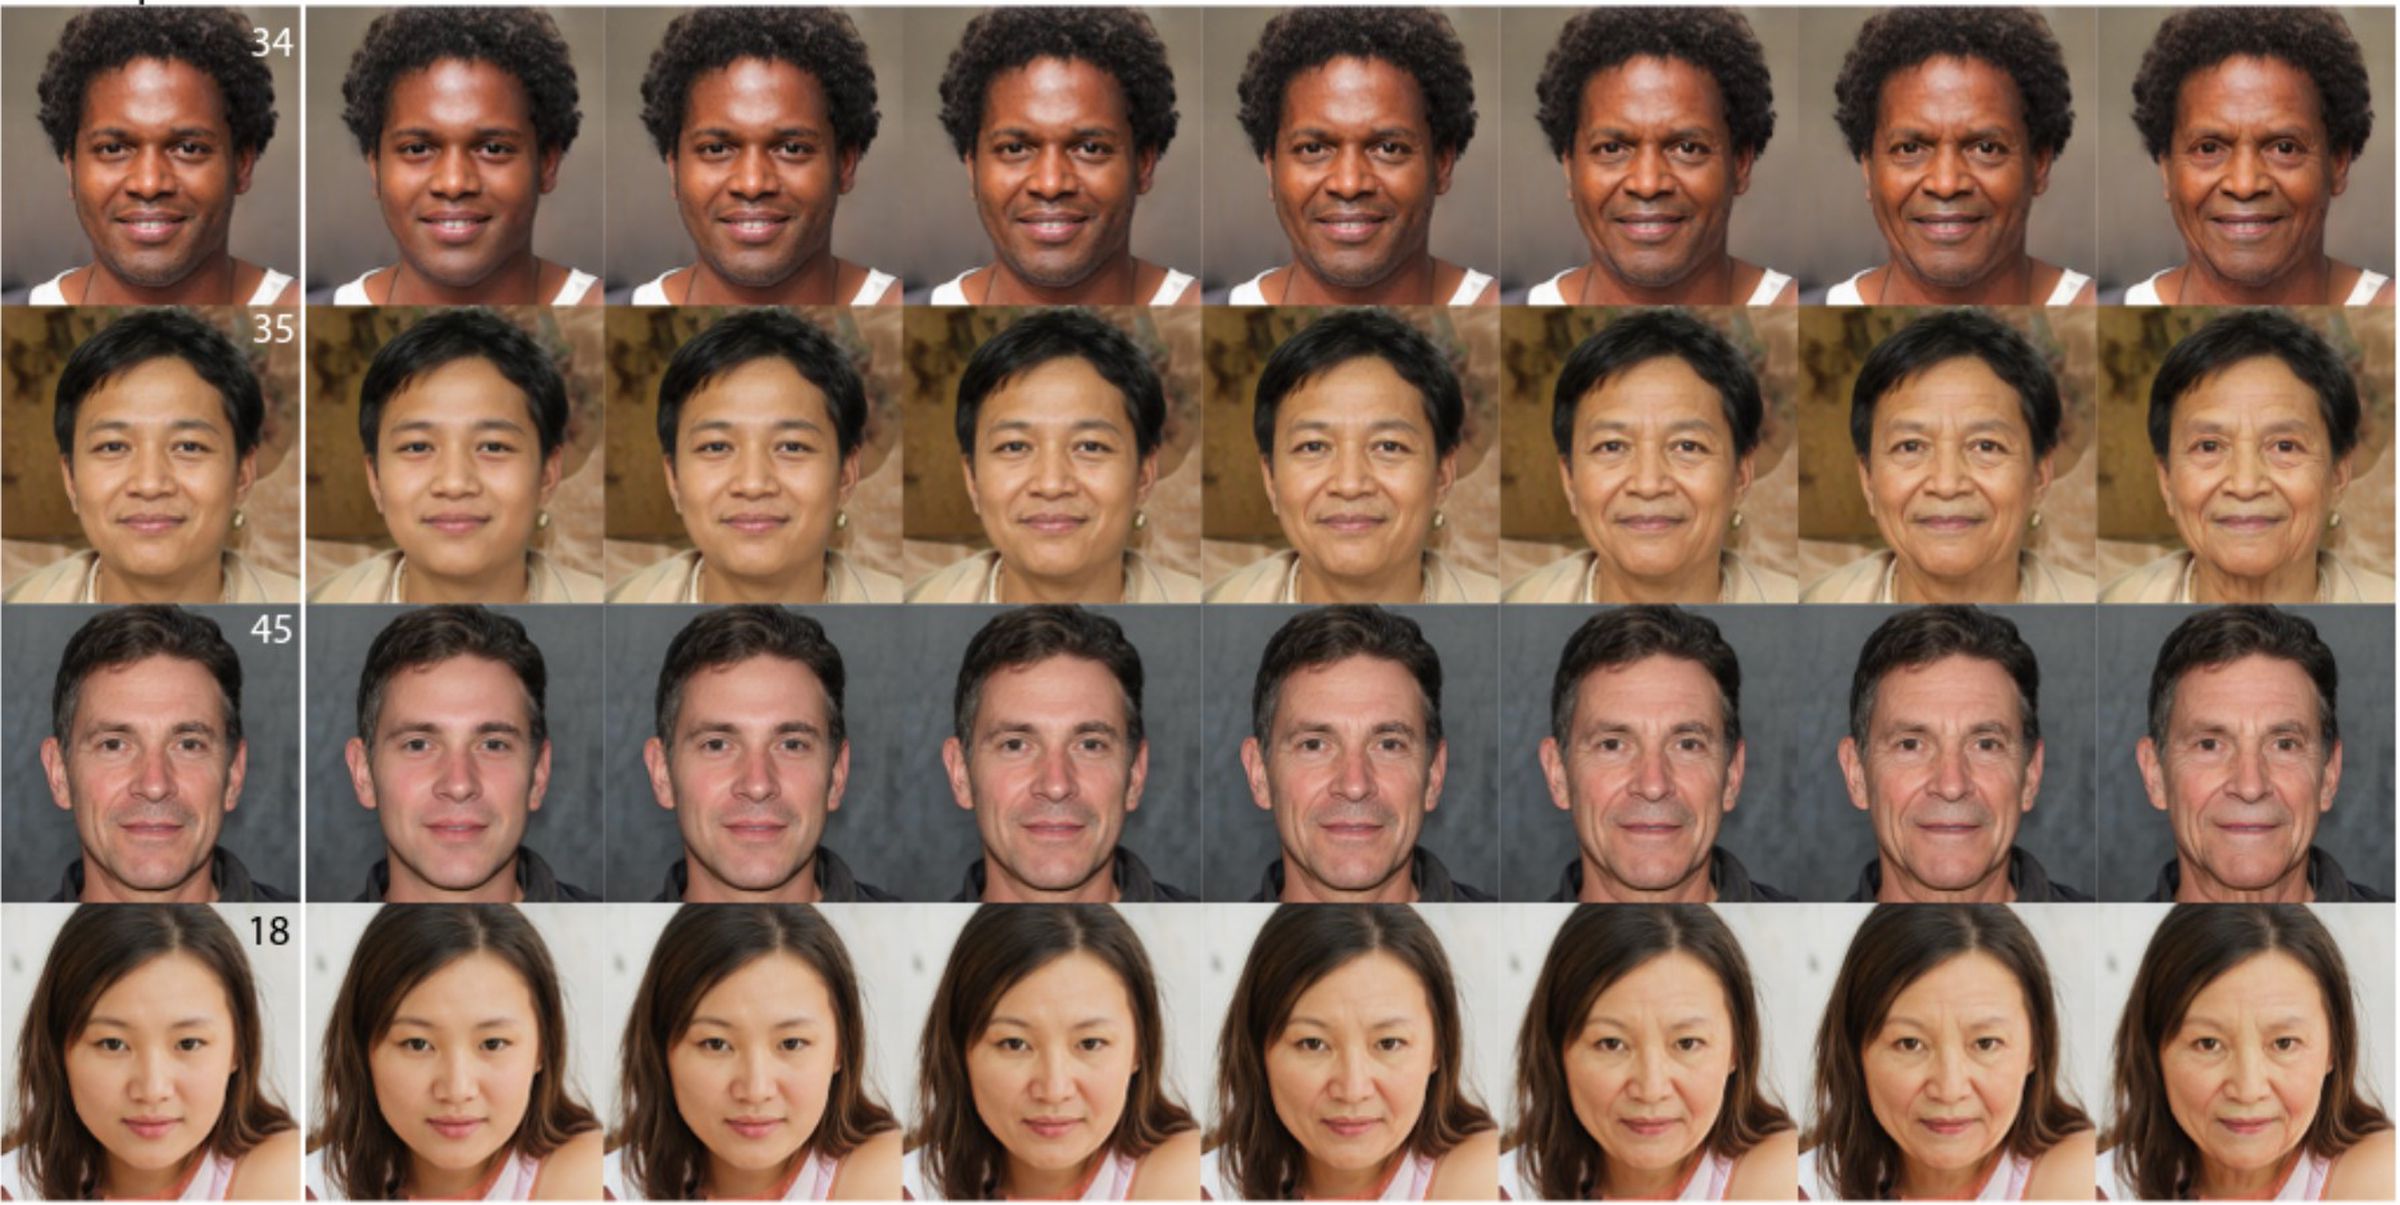 ردیف‌هایی از تصاویر چهره‌های انسان که به‌صورت دیجیتالی در سنین مختلف ایجاد شده‌اند